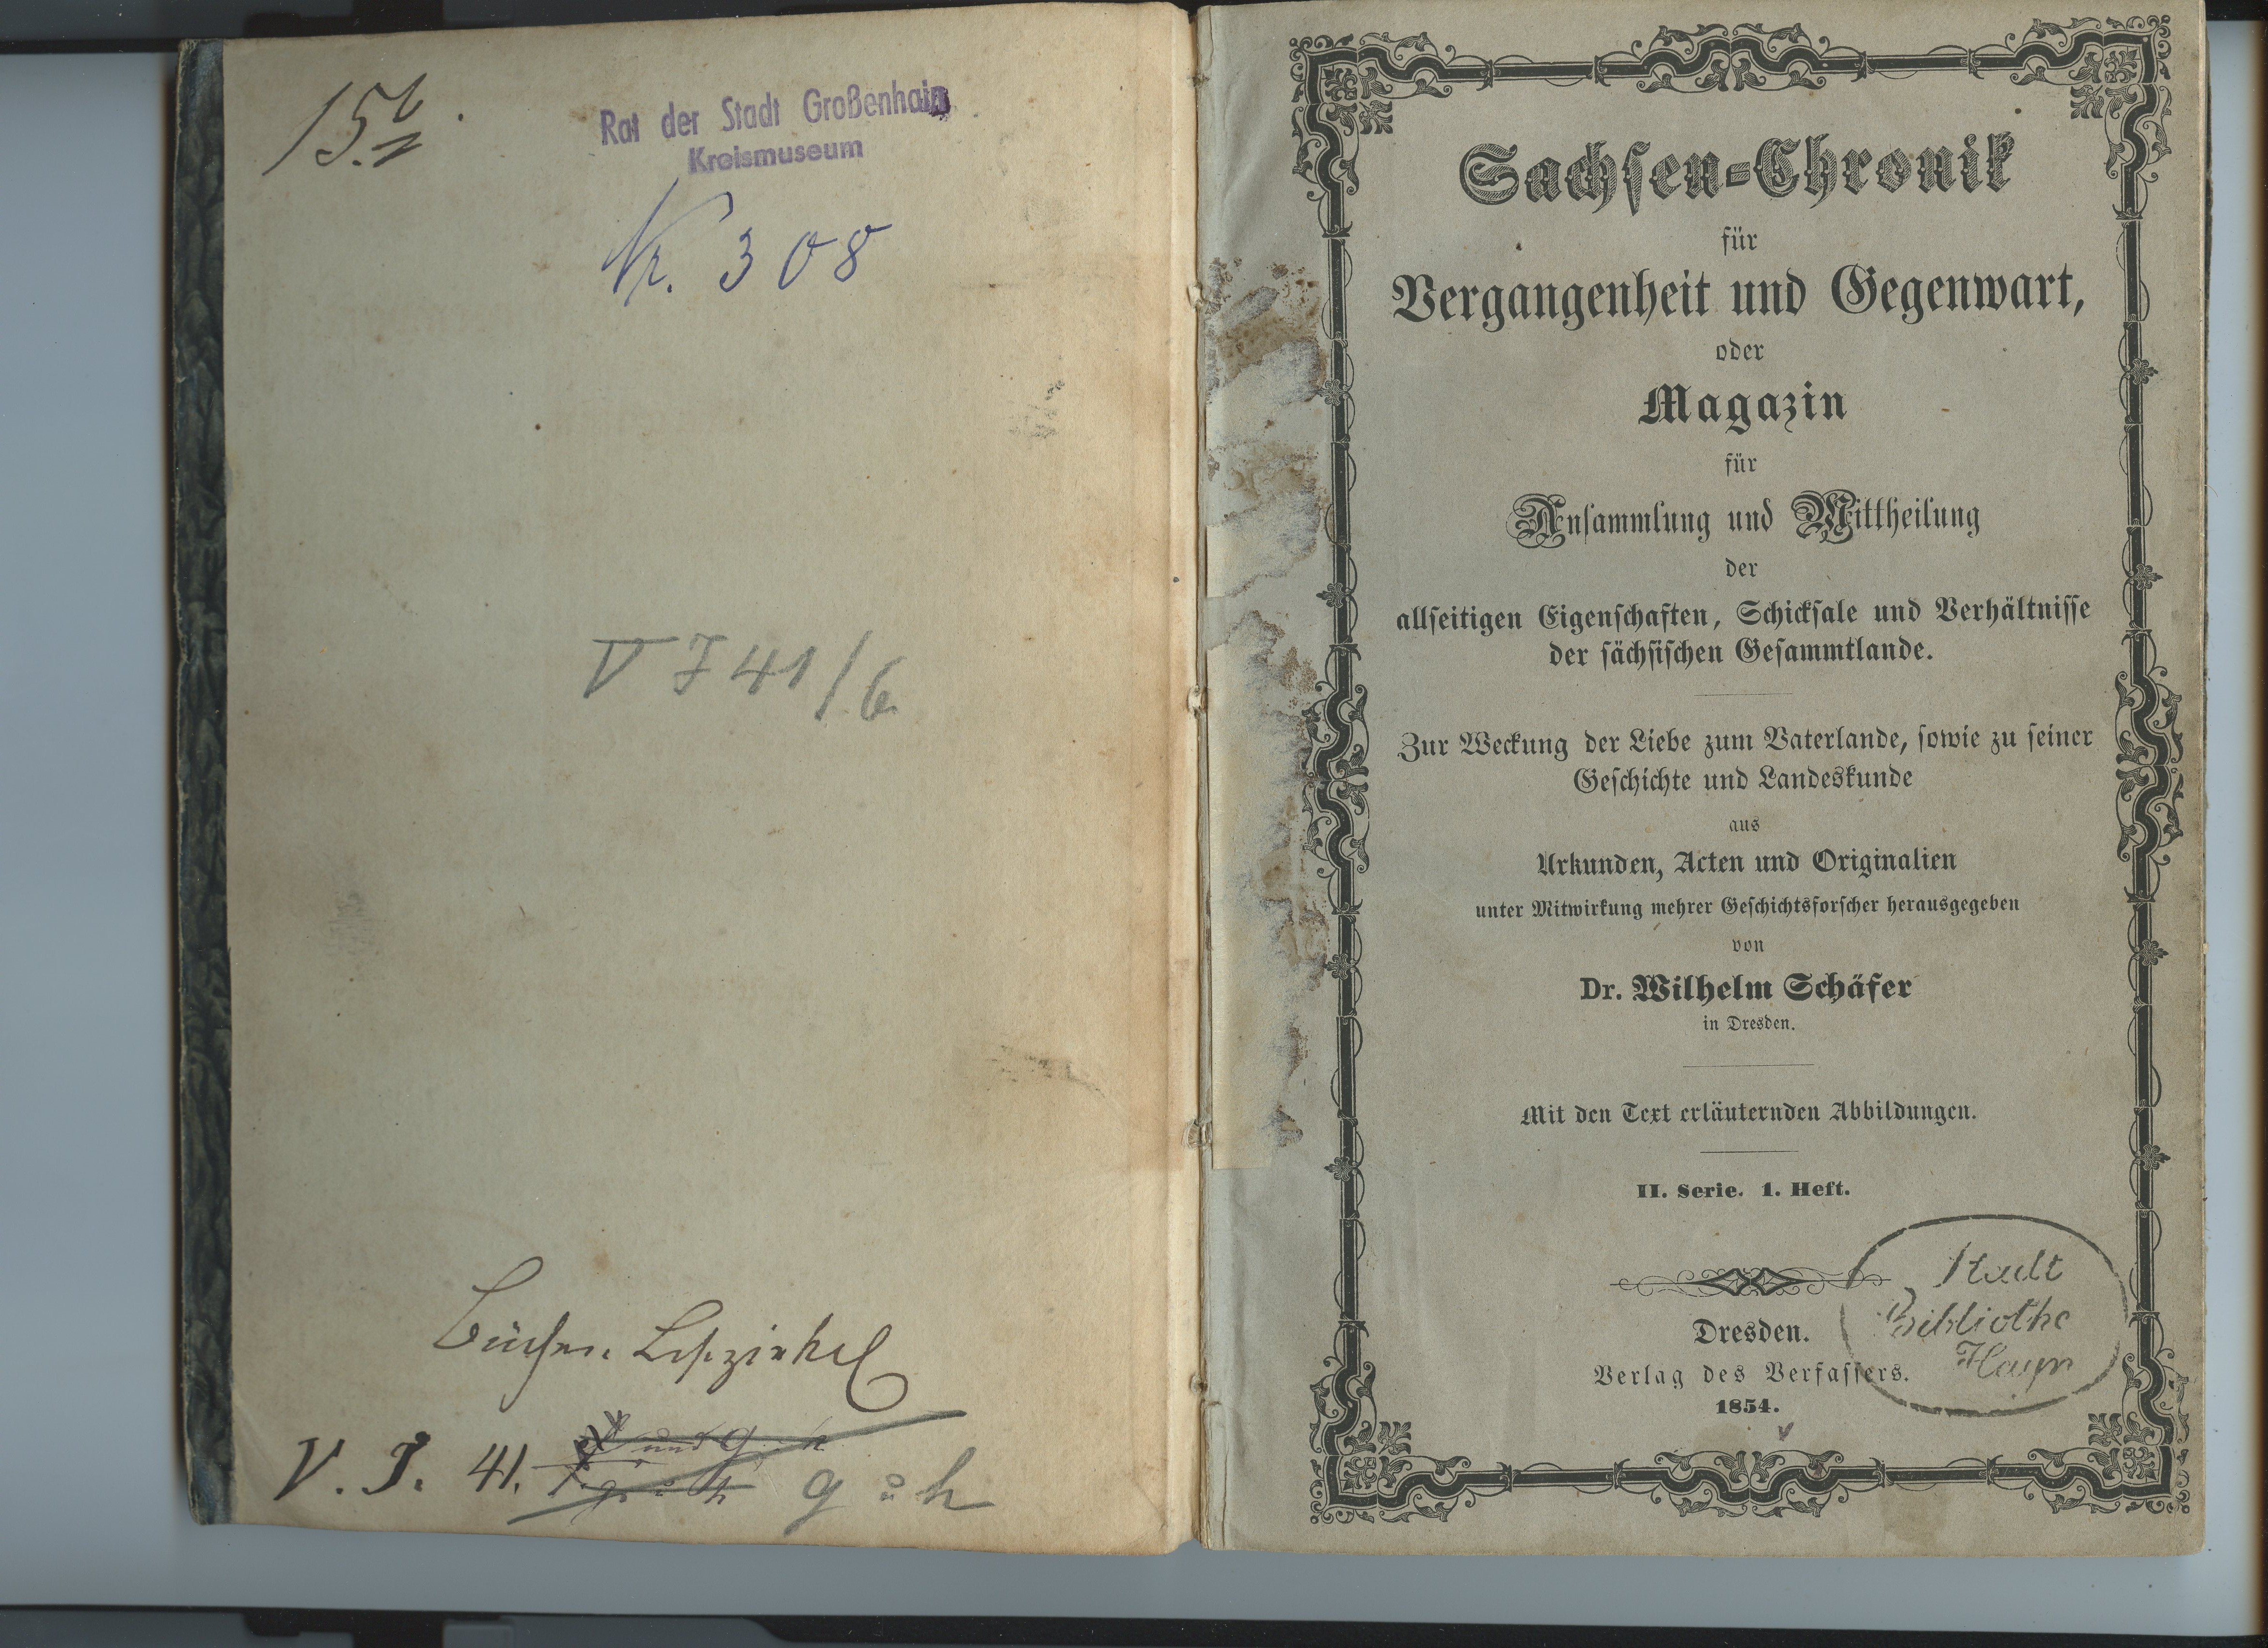 Schäfer, Wilhelm (Hrsg.): Sachsen-Chronik für Vergangenheit und Gegenwart, II/1 1854 (Museum Alte Lateinschule CC BY-NC-SA)